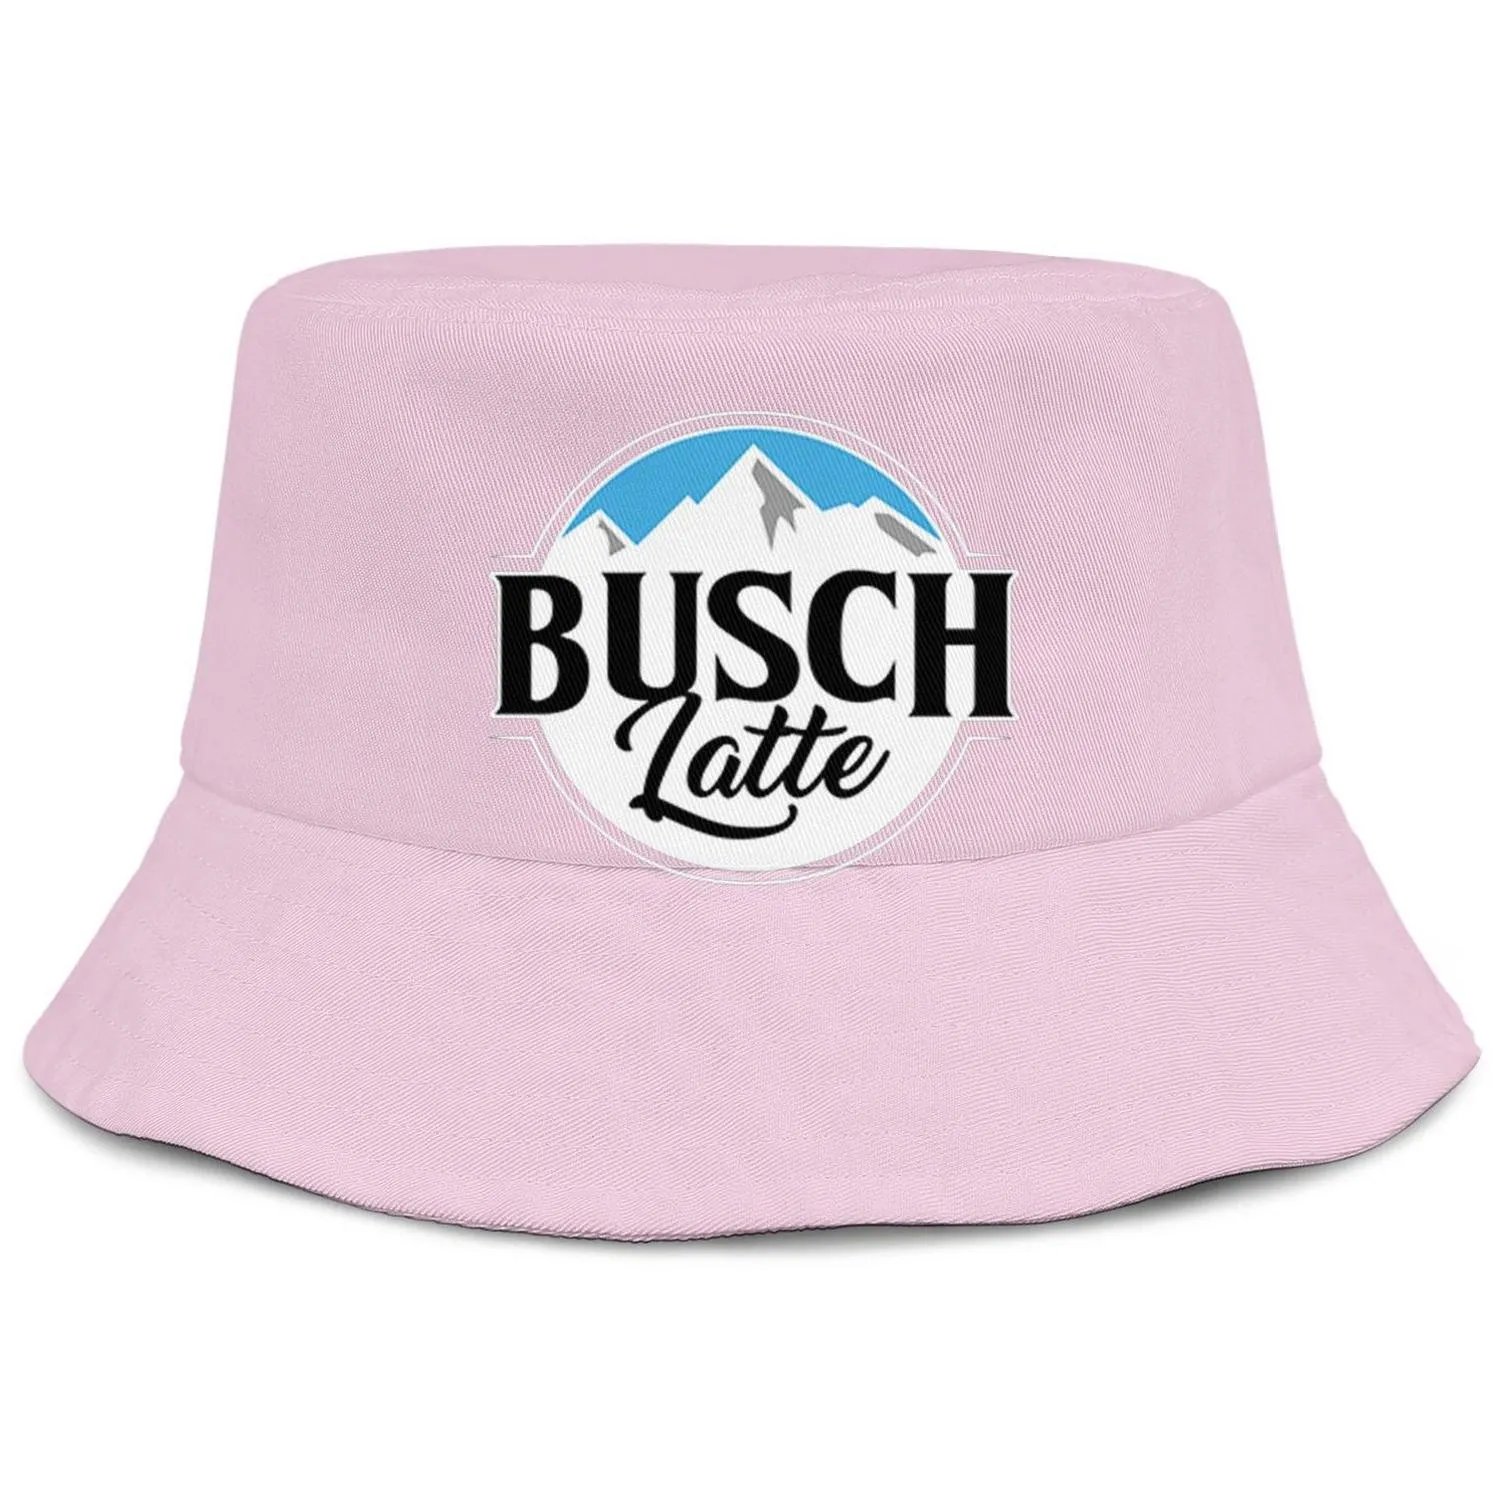 Busch Light Beer logo hommes et femmes buckethat cool jeunesse seau baseballcap bleu clair adge blanc Latte So Much320H